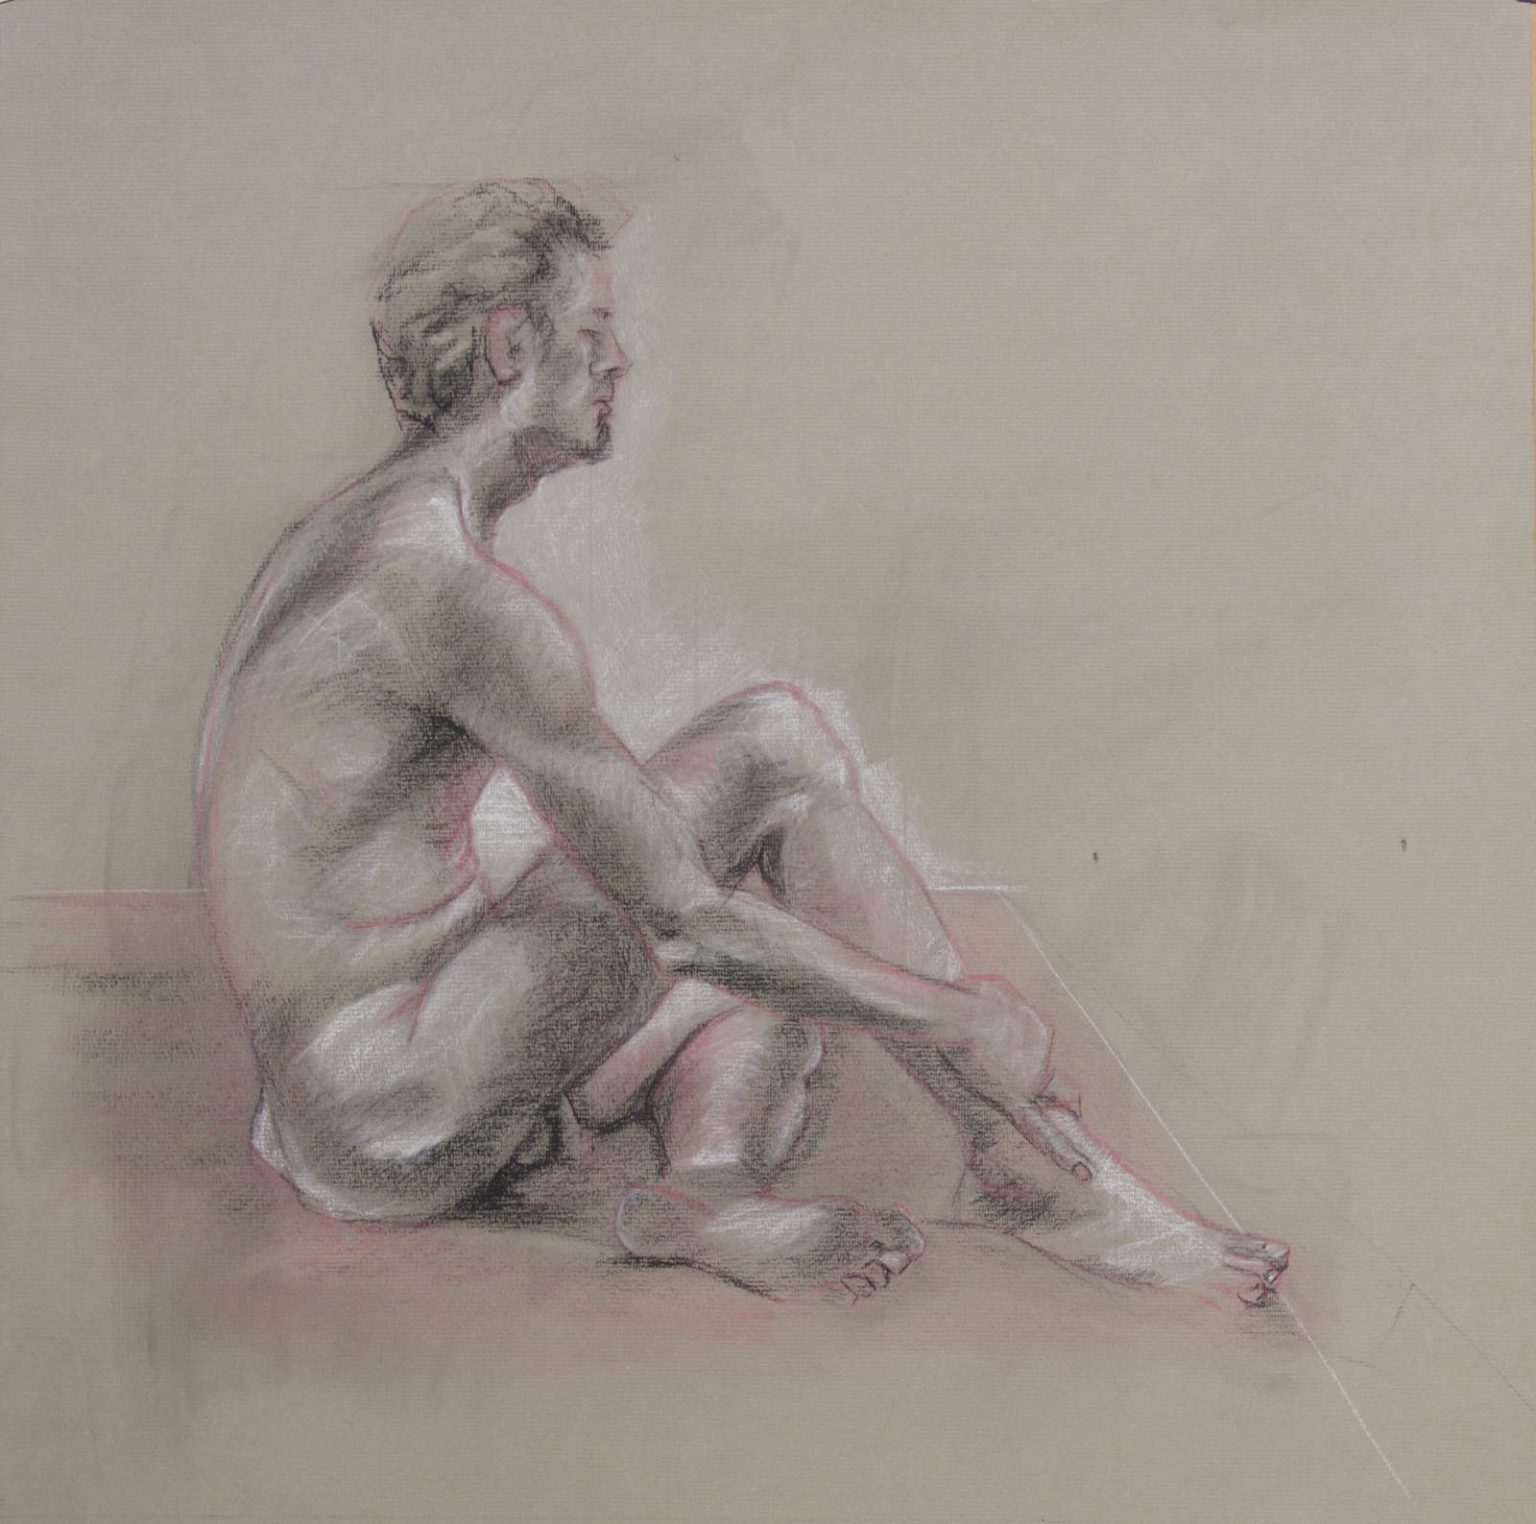 Male nude | Charcoal & conté crayon on Ingres paper, 52cm x 52cm